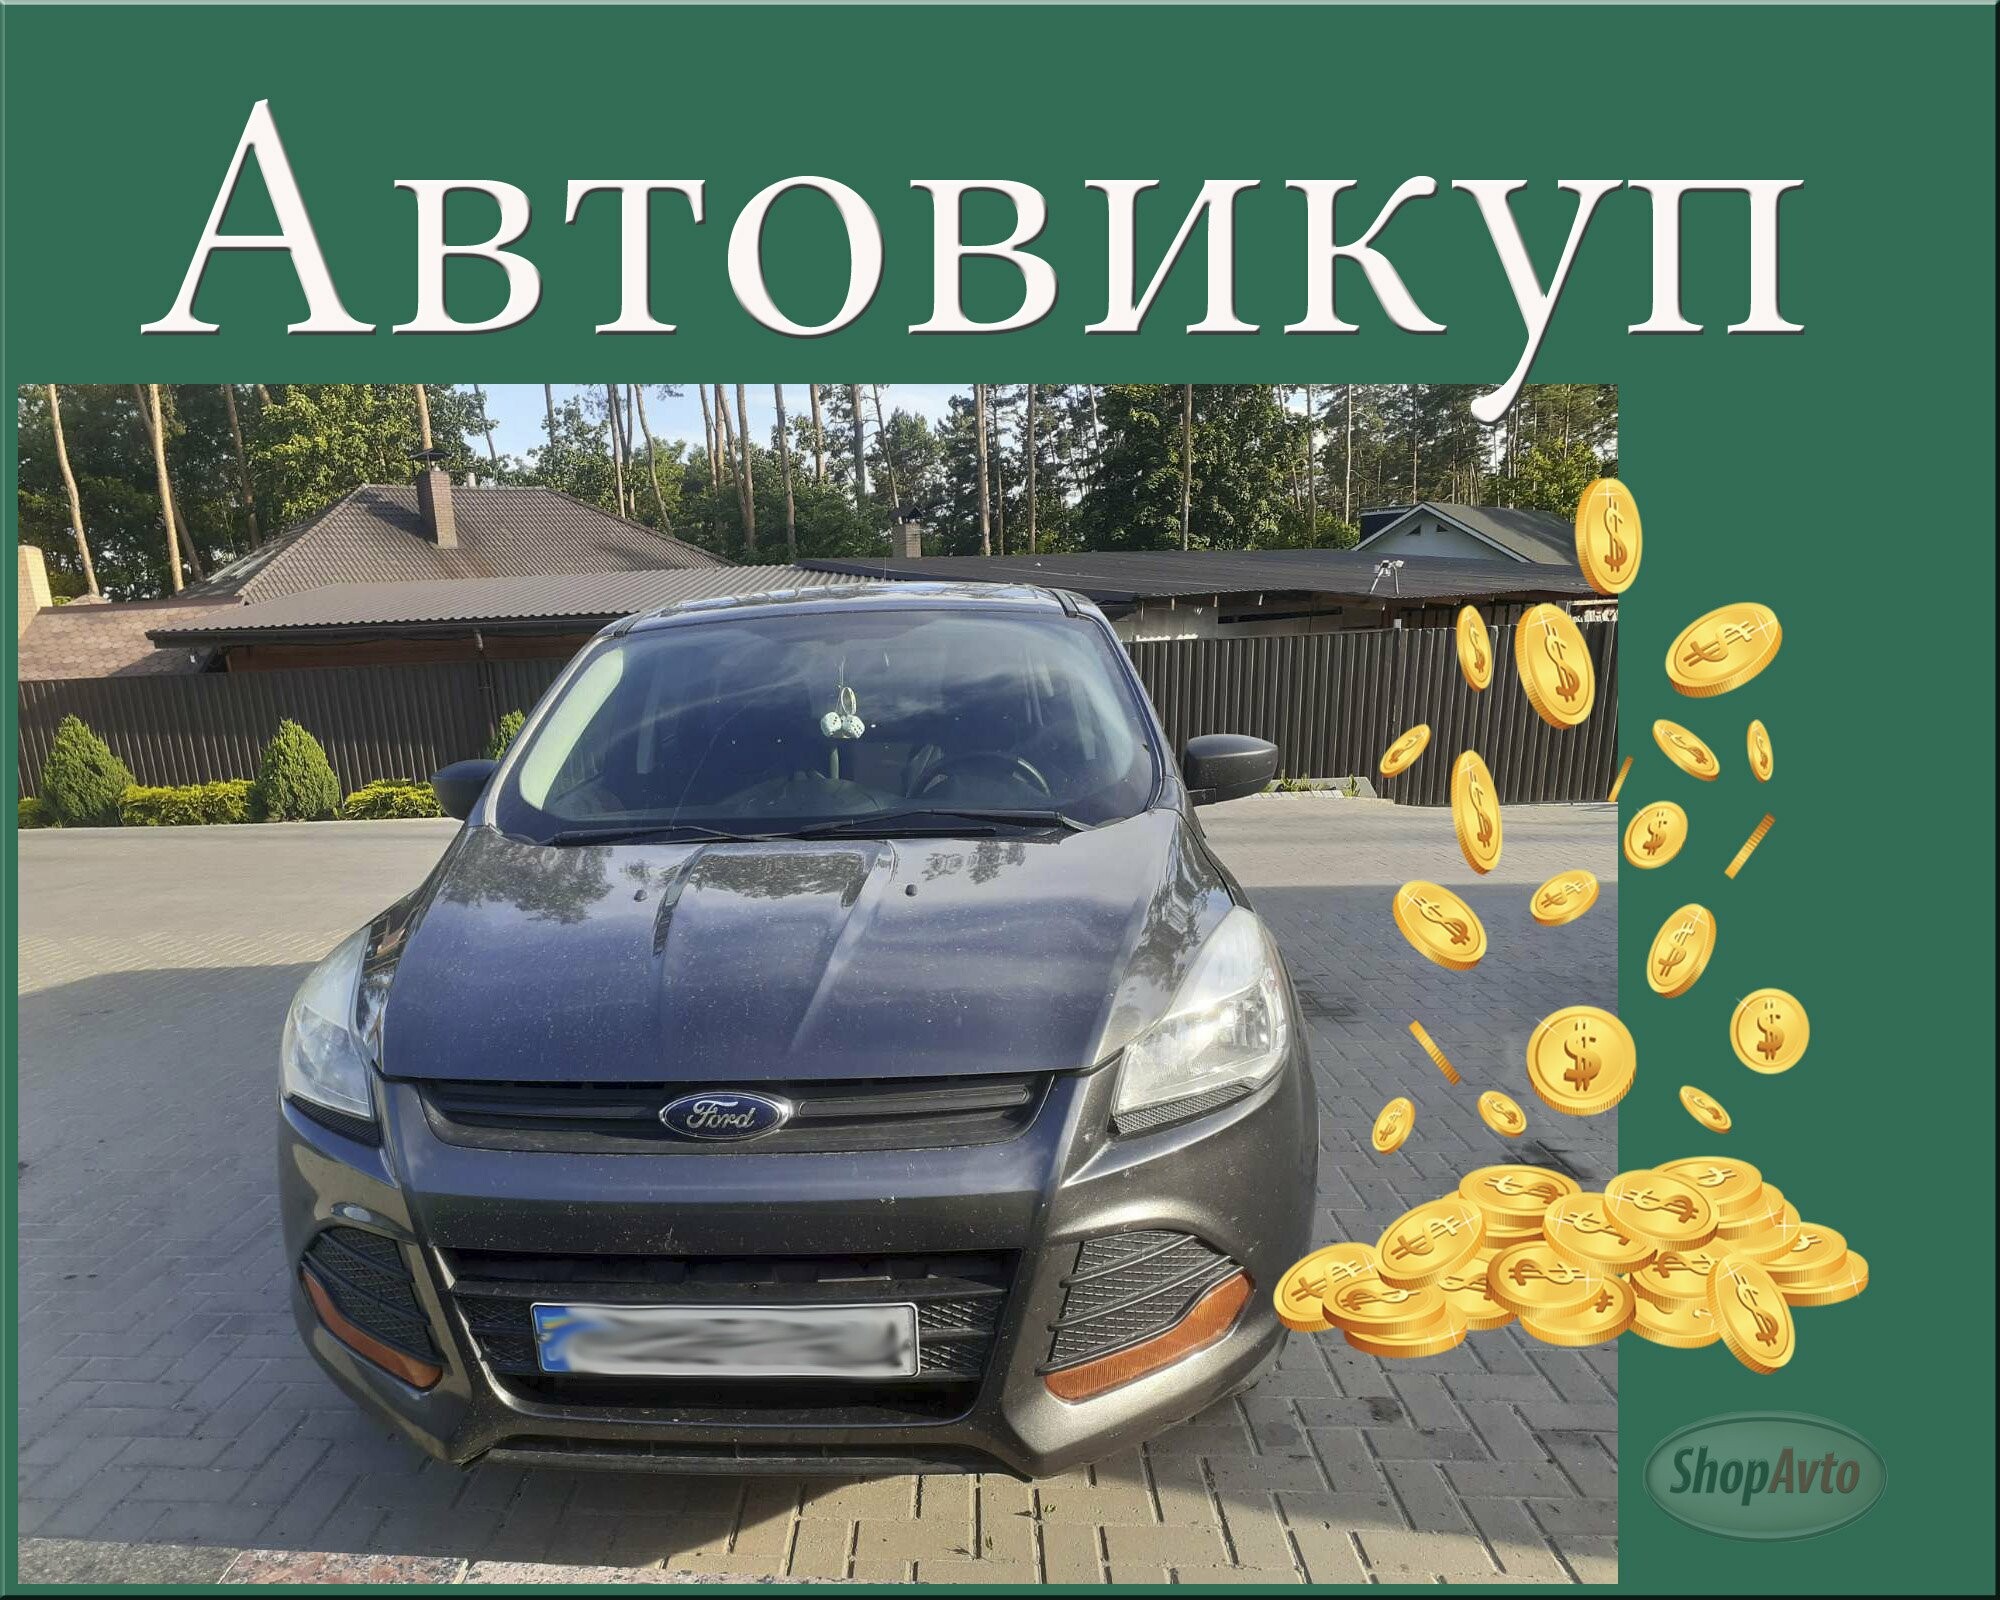 Автовыкуп Харьков и область